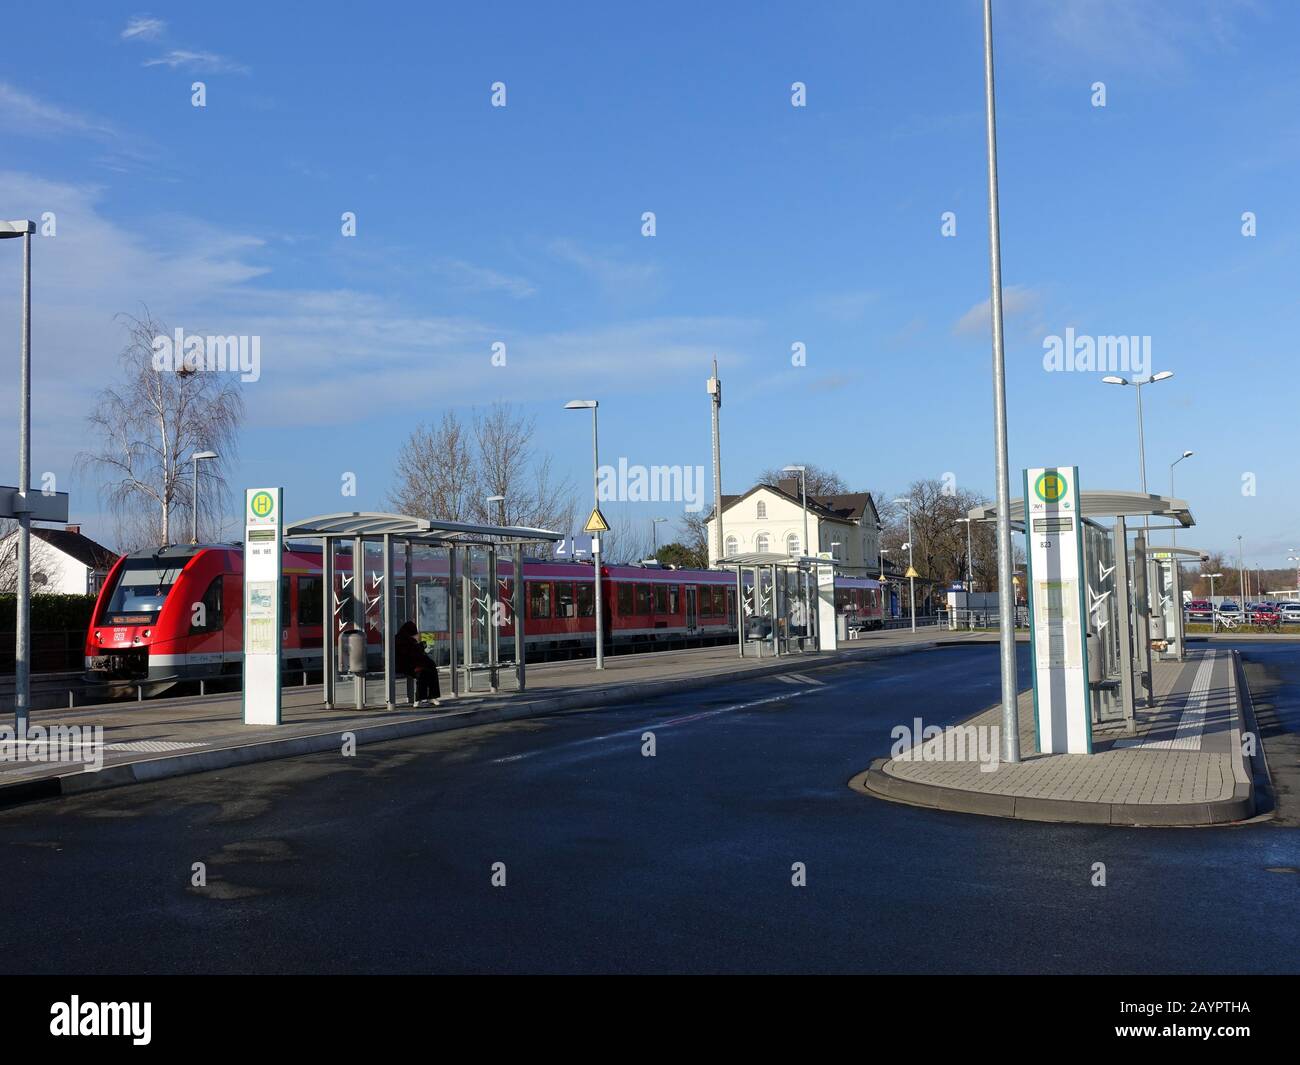 Bushaltestelle am Bahnhof Weilerswist, Nordrhein-Westfalen, Deutschland Stock Photo